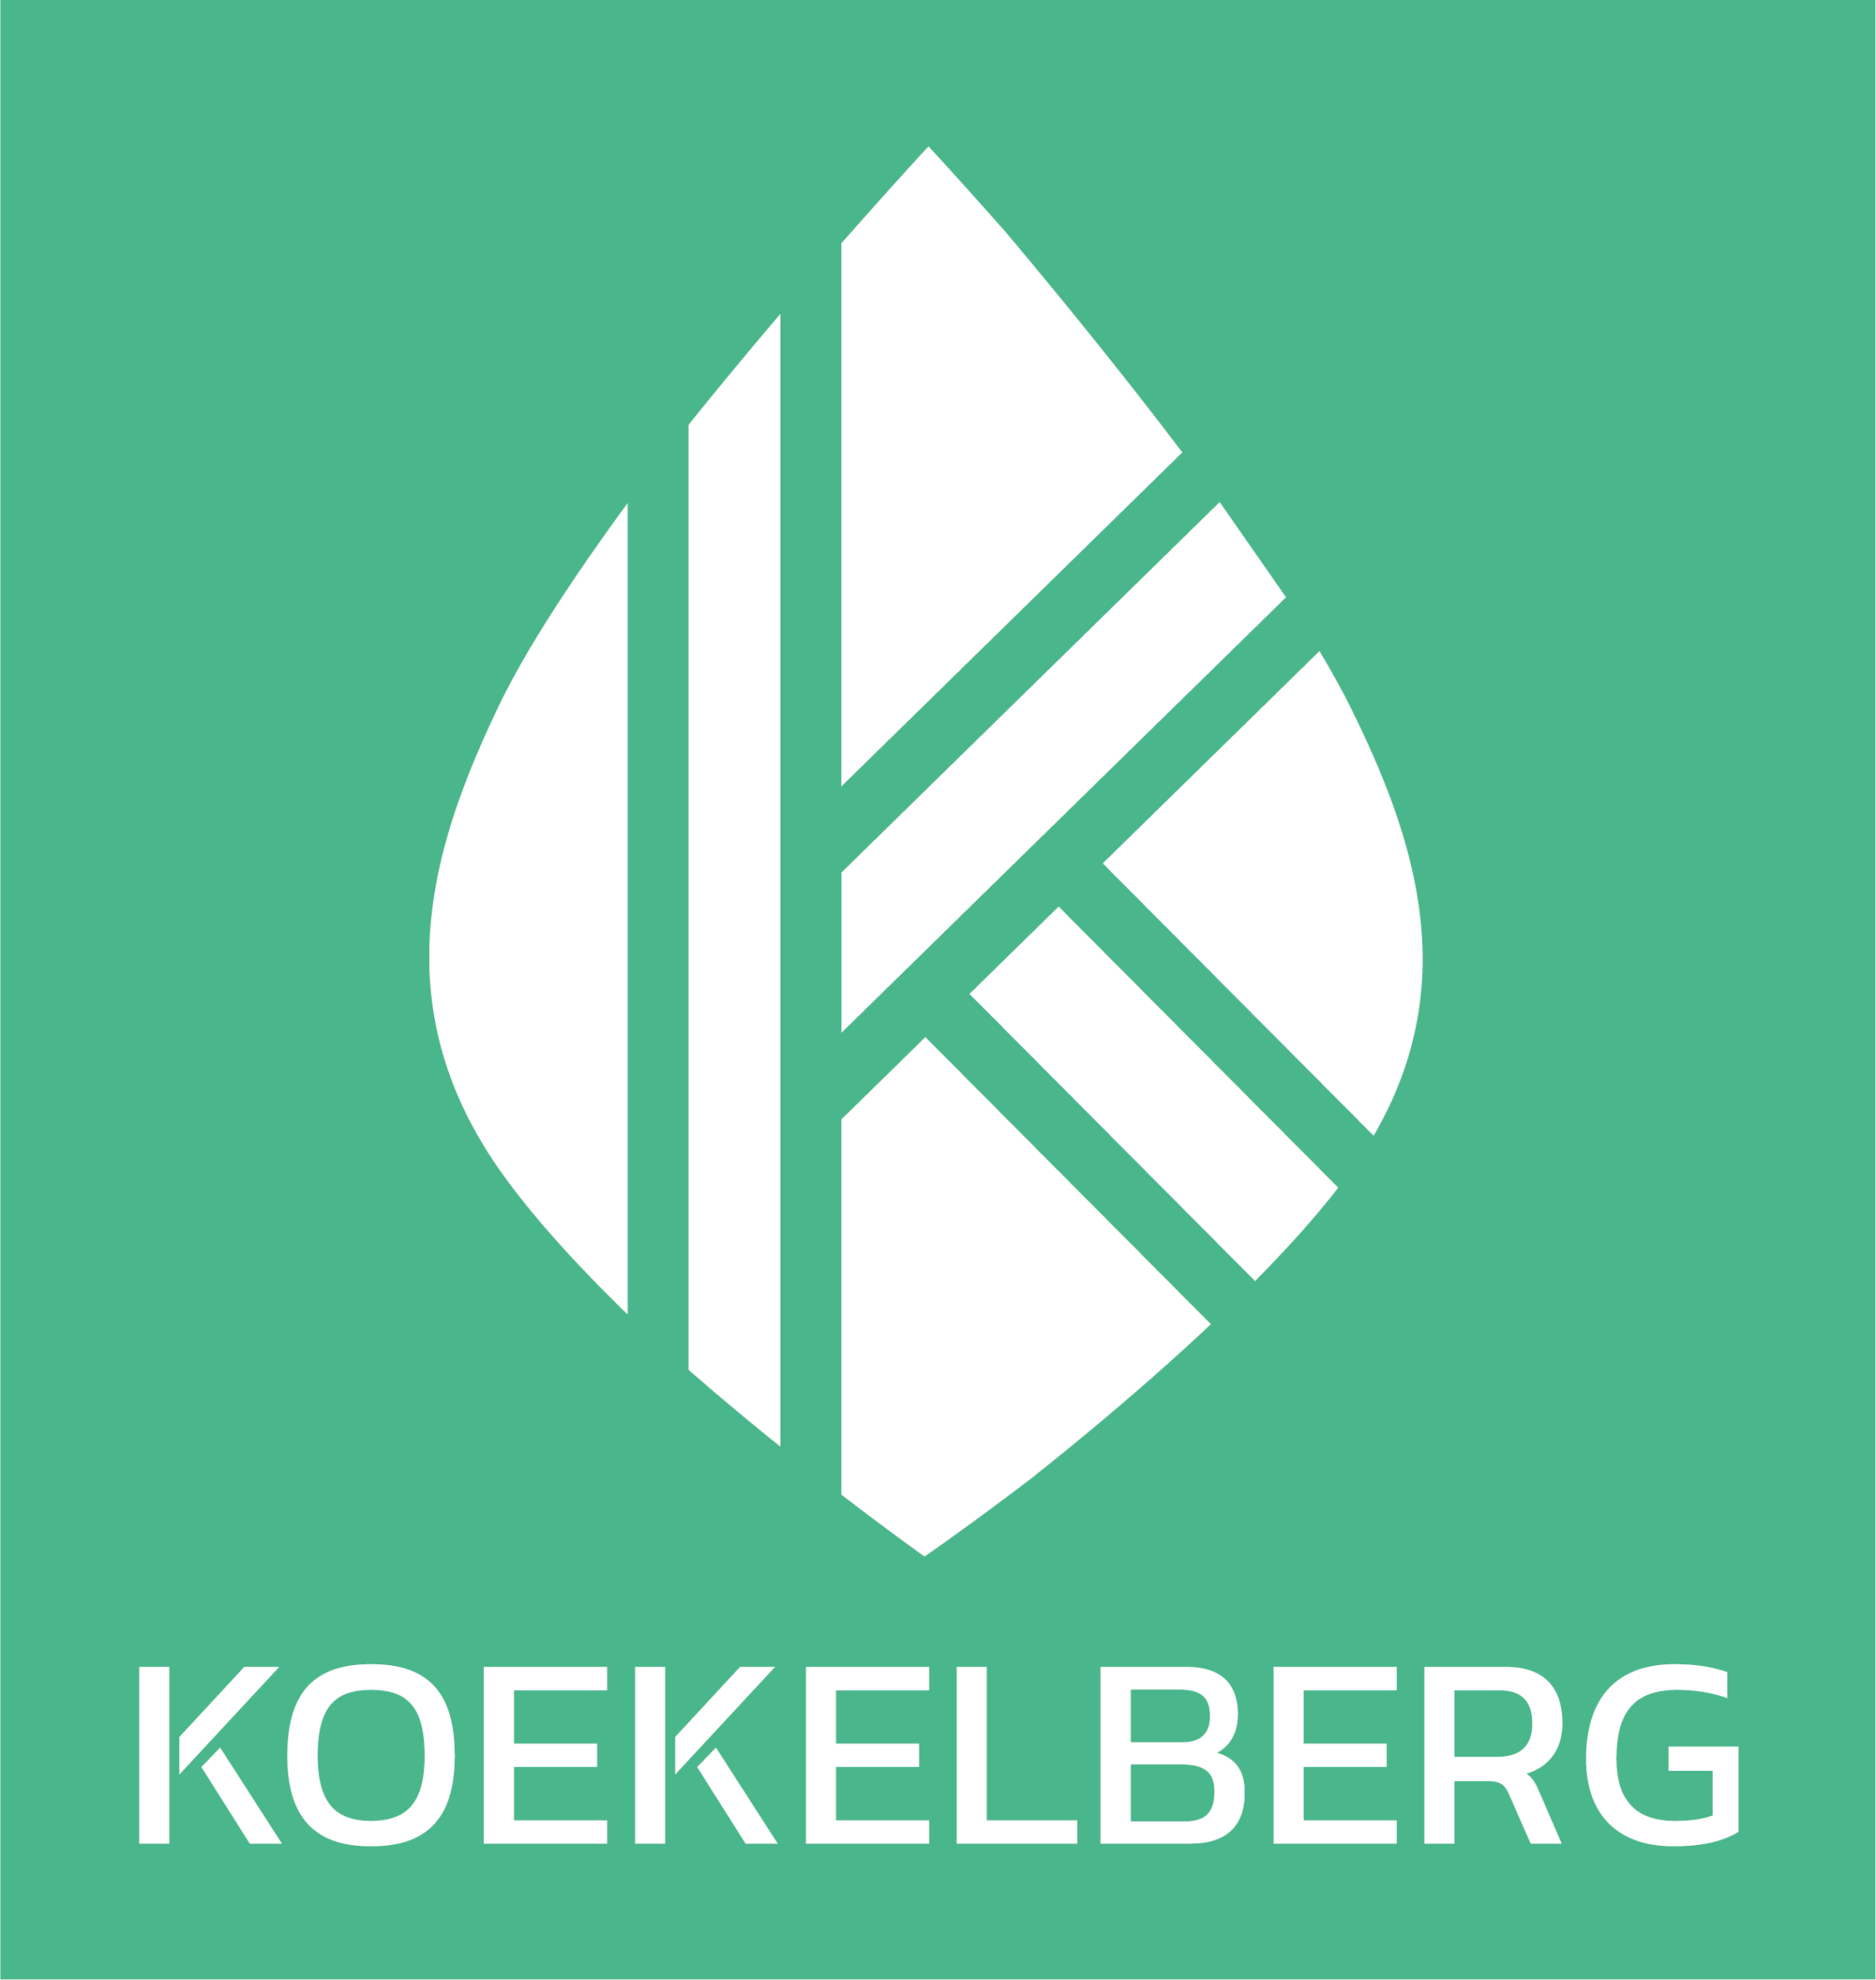 KOEKELBERG-2020-fond-vert